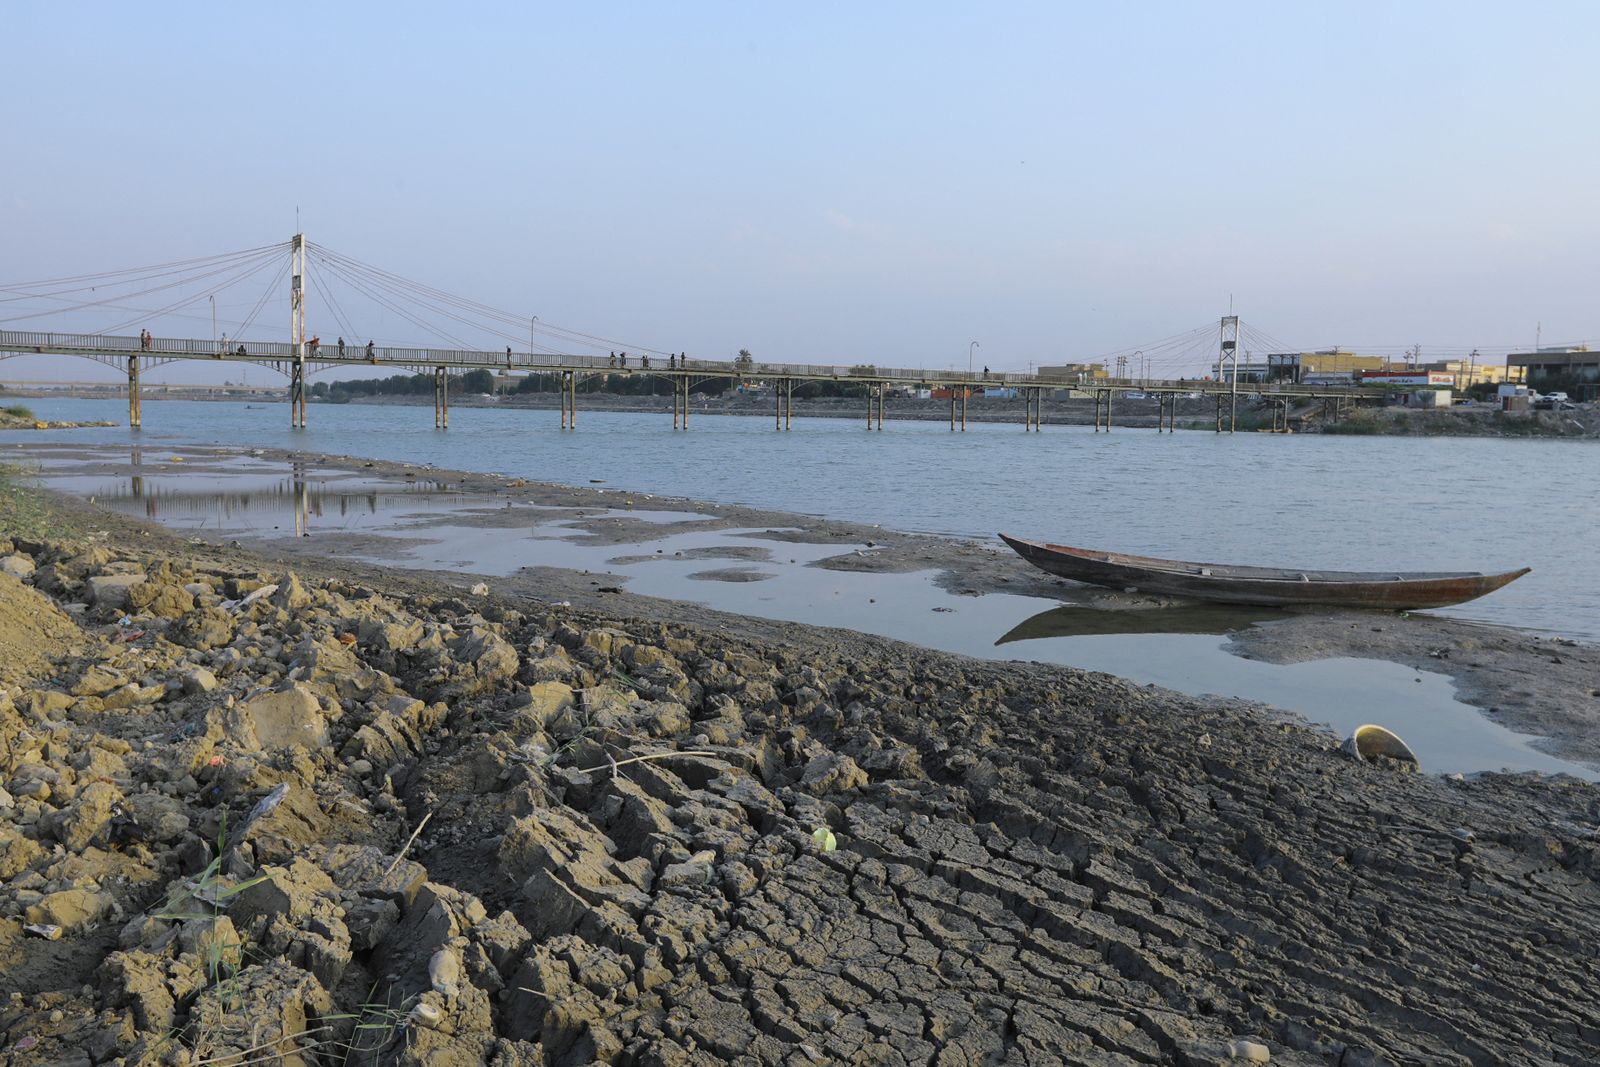 قارب مهجور على ضفة نهر الفرات المتأثر بالجفاف الناجم عن انخفاض منسوب المياه مدينة الناصرية، محافظة ذي قار العراق. 8 نوفمبر 2022 - AFP